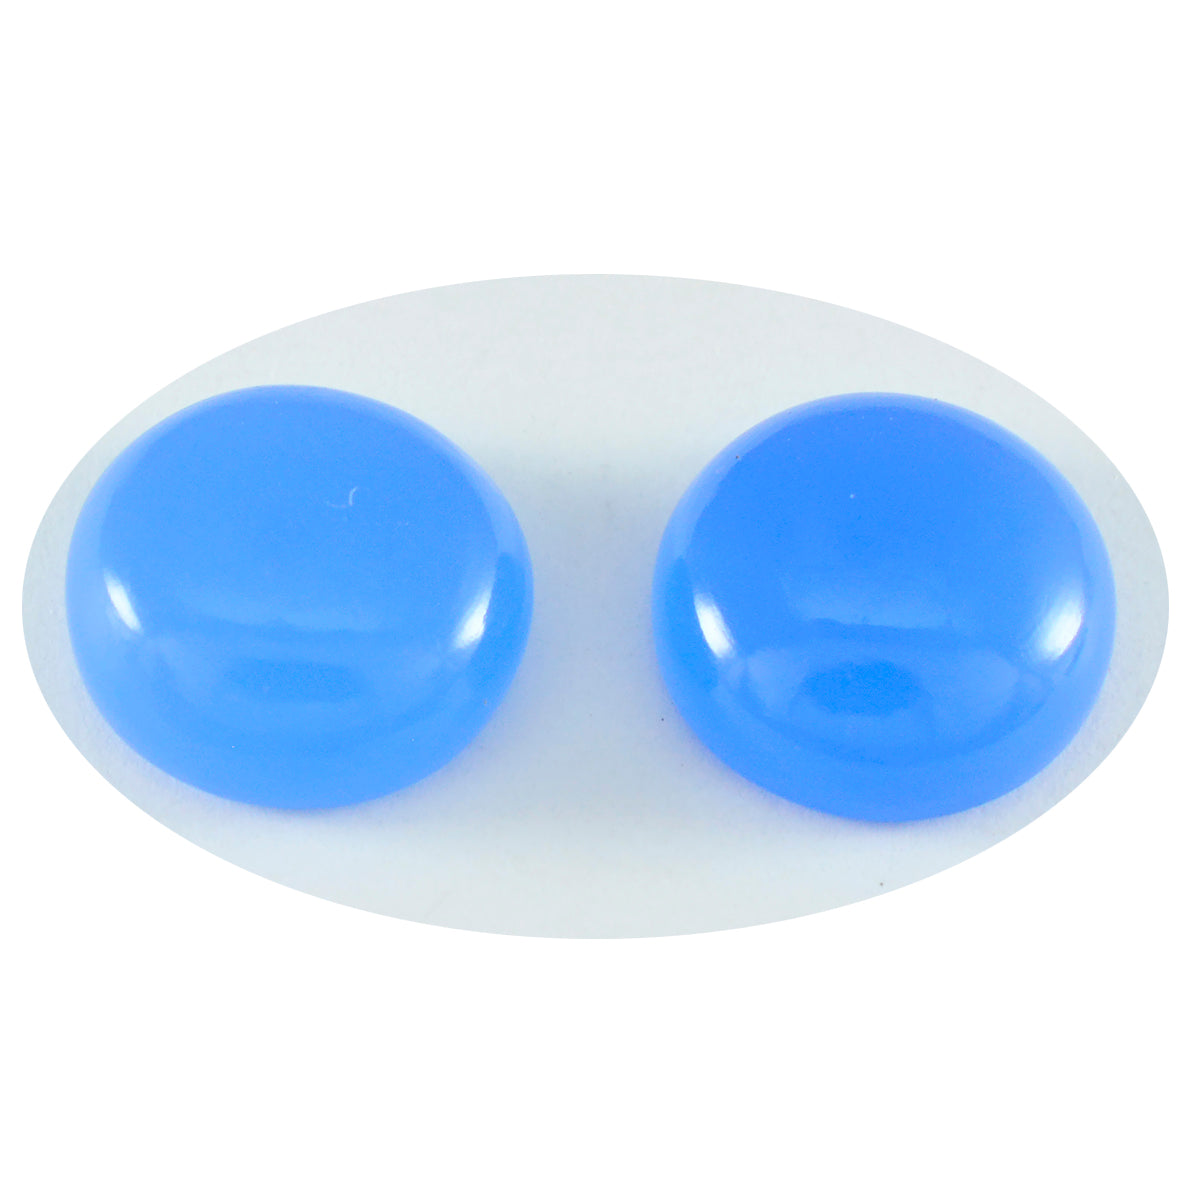 Riyogems 1 pieza cabujón de Calcedonia azul 10x10mm forma redonda gemas sueltas de buena calidad